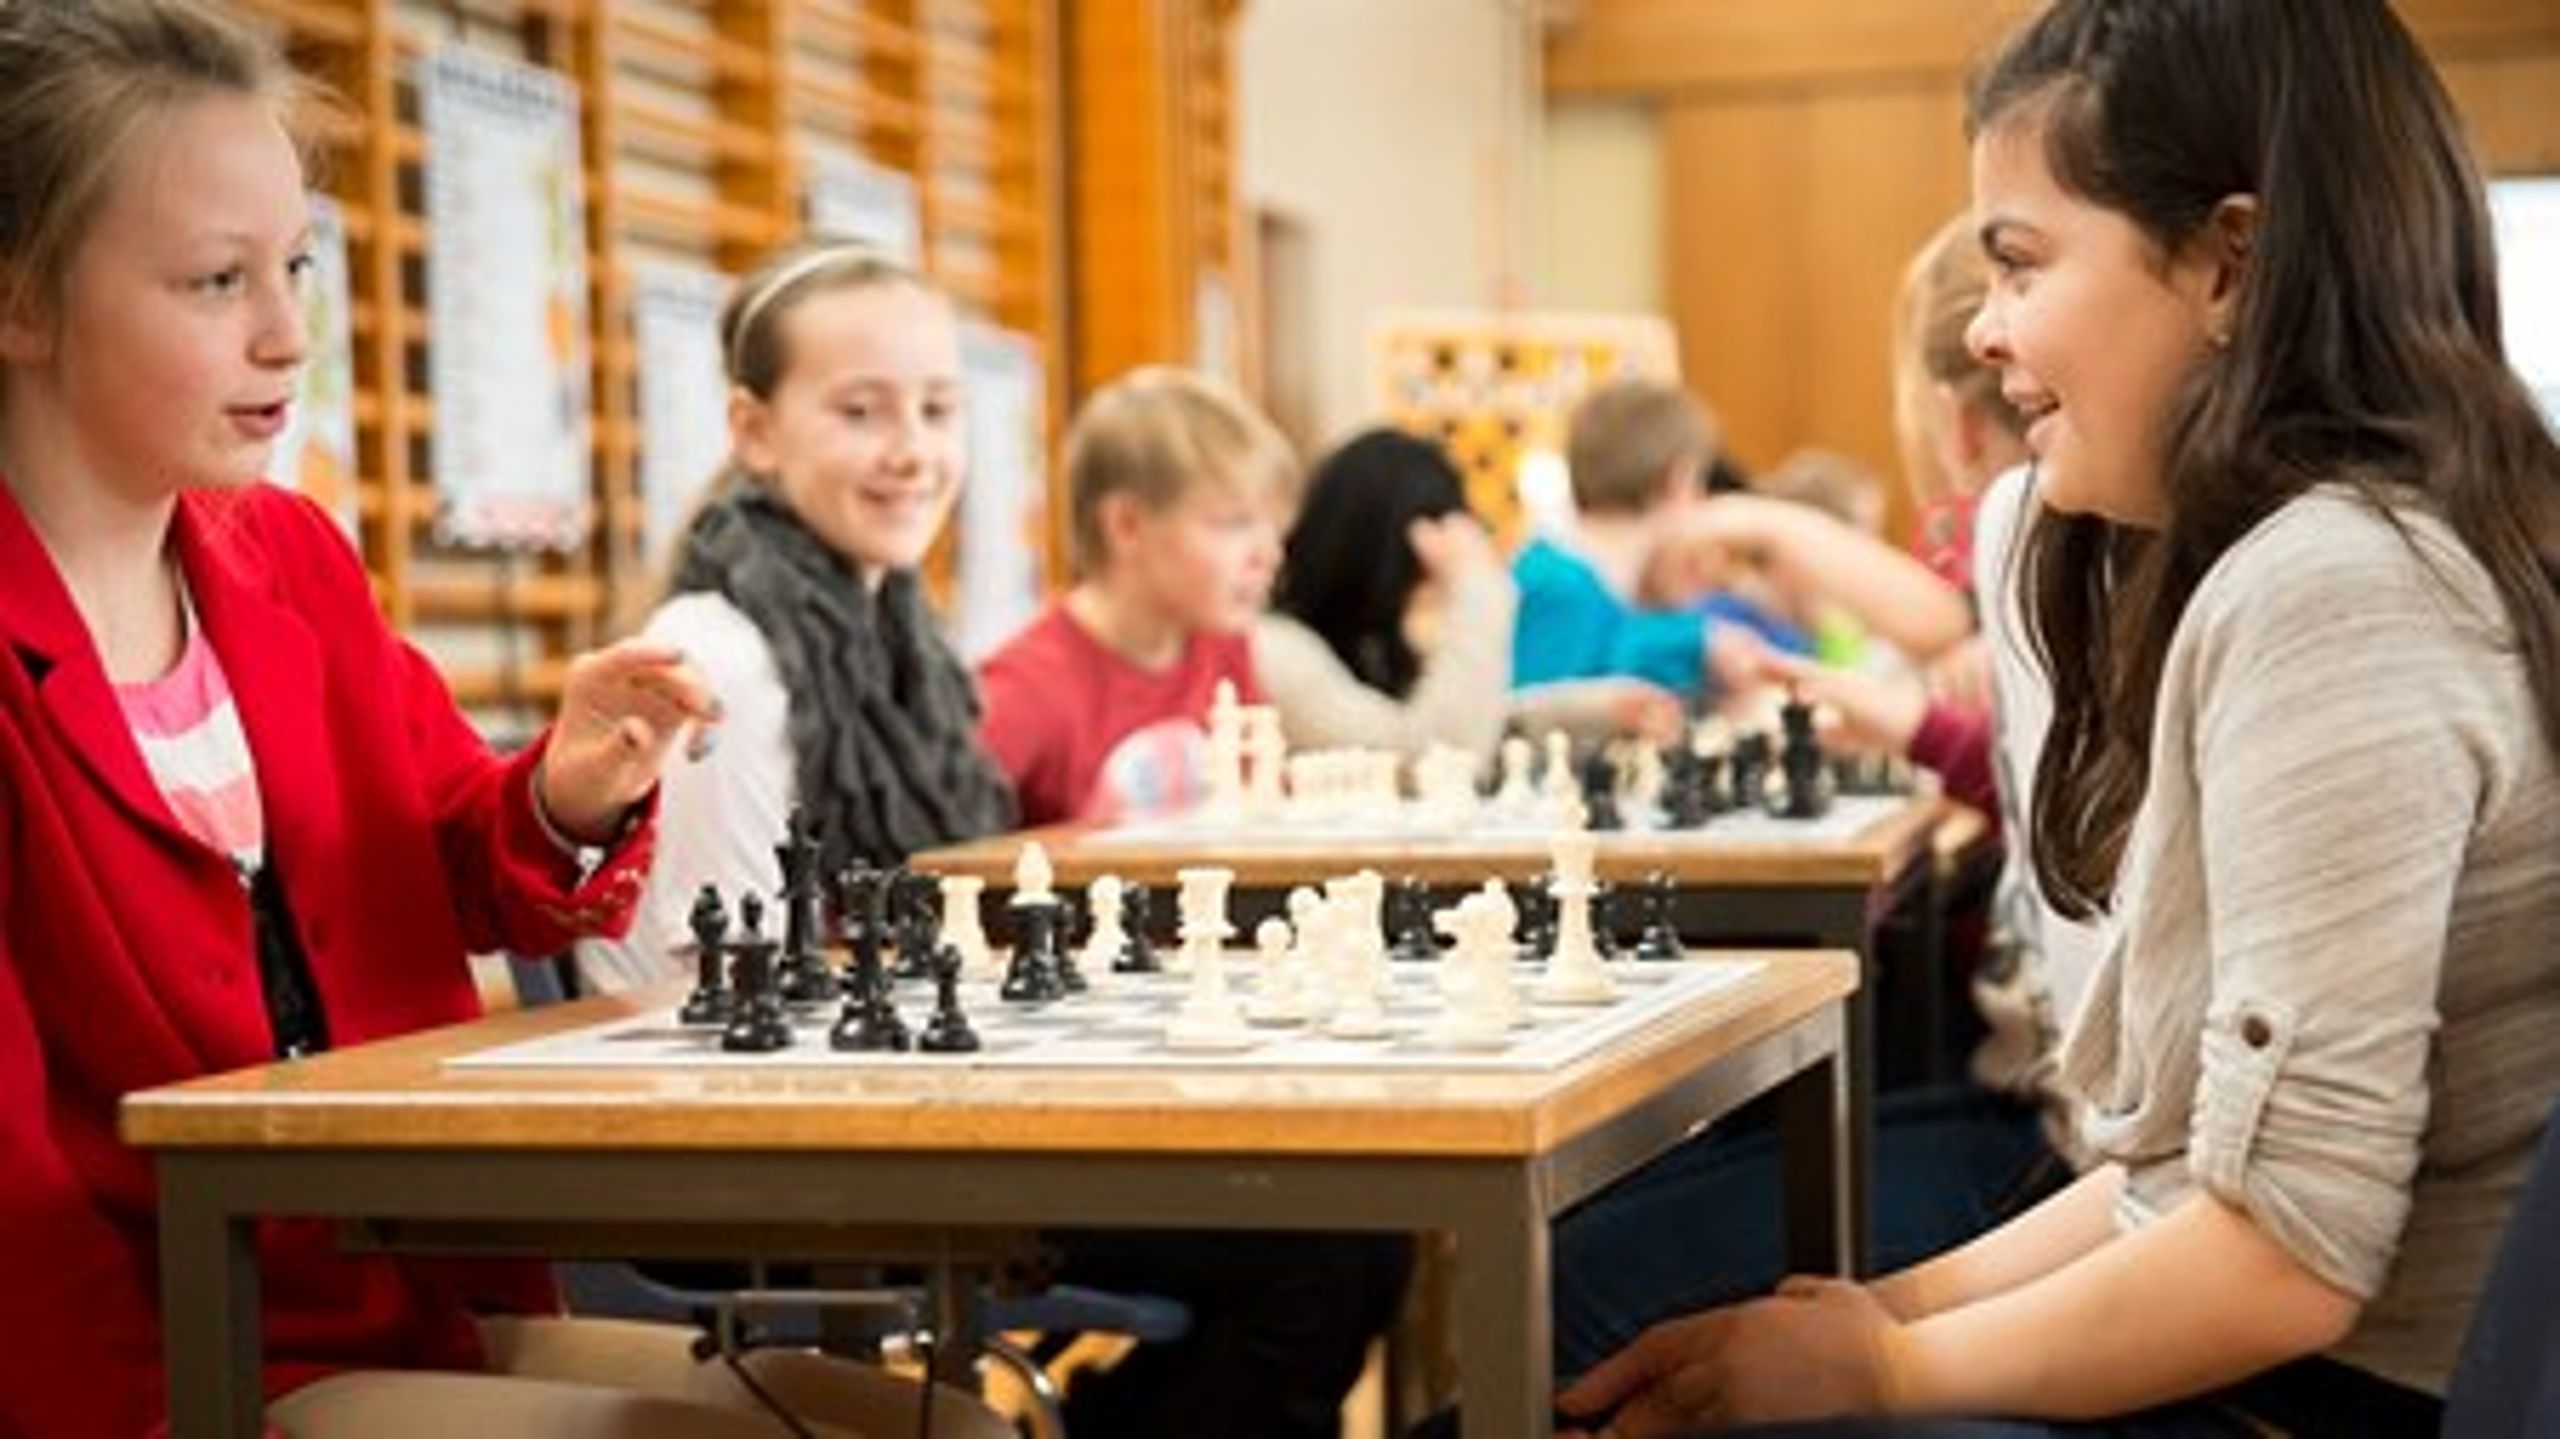 Brug af skak i undervisningen øger elevernes koncentration og gør dem bedre til at læse og regne, viser erfaringer fra Aarhus.